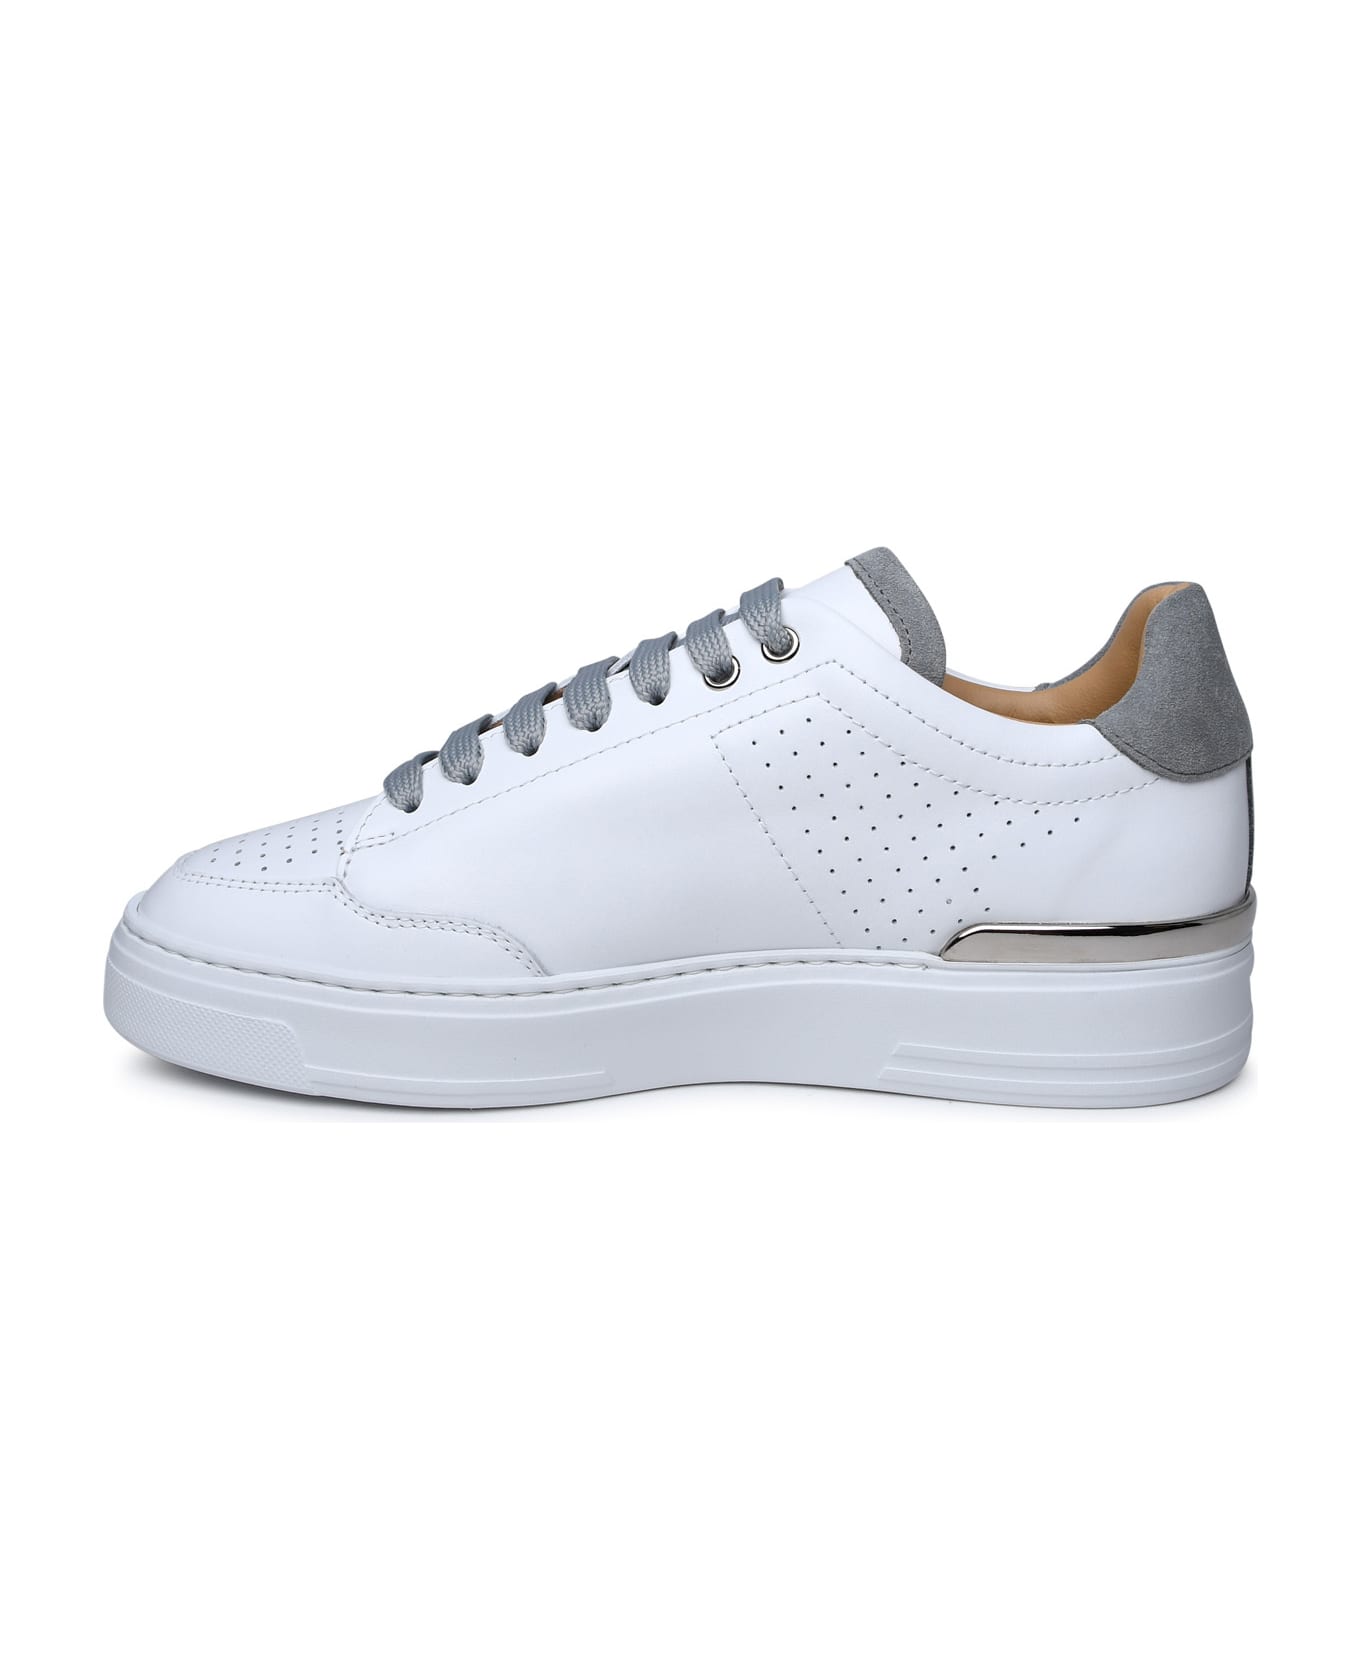 Philipp Plein White Leather Sneakers - White スニーカー